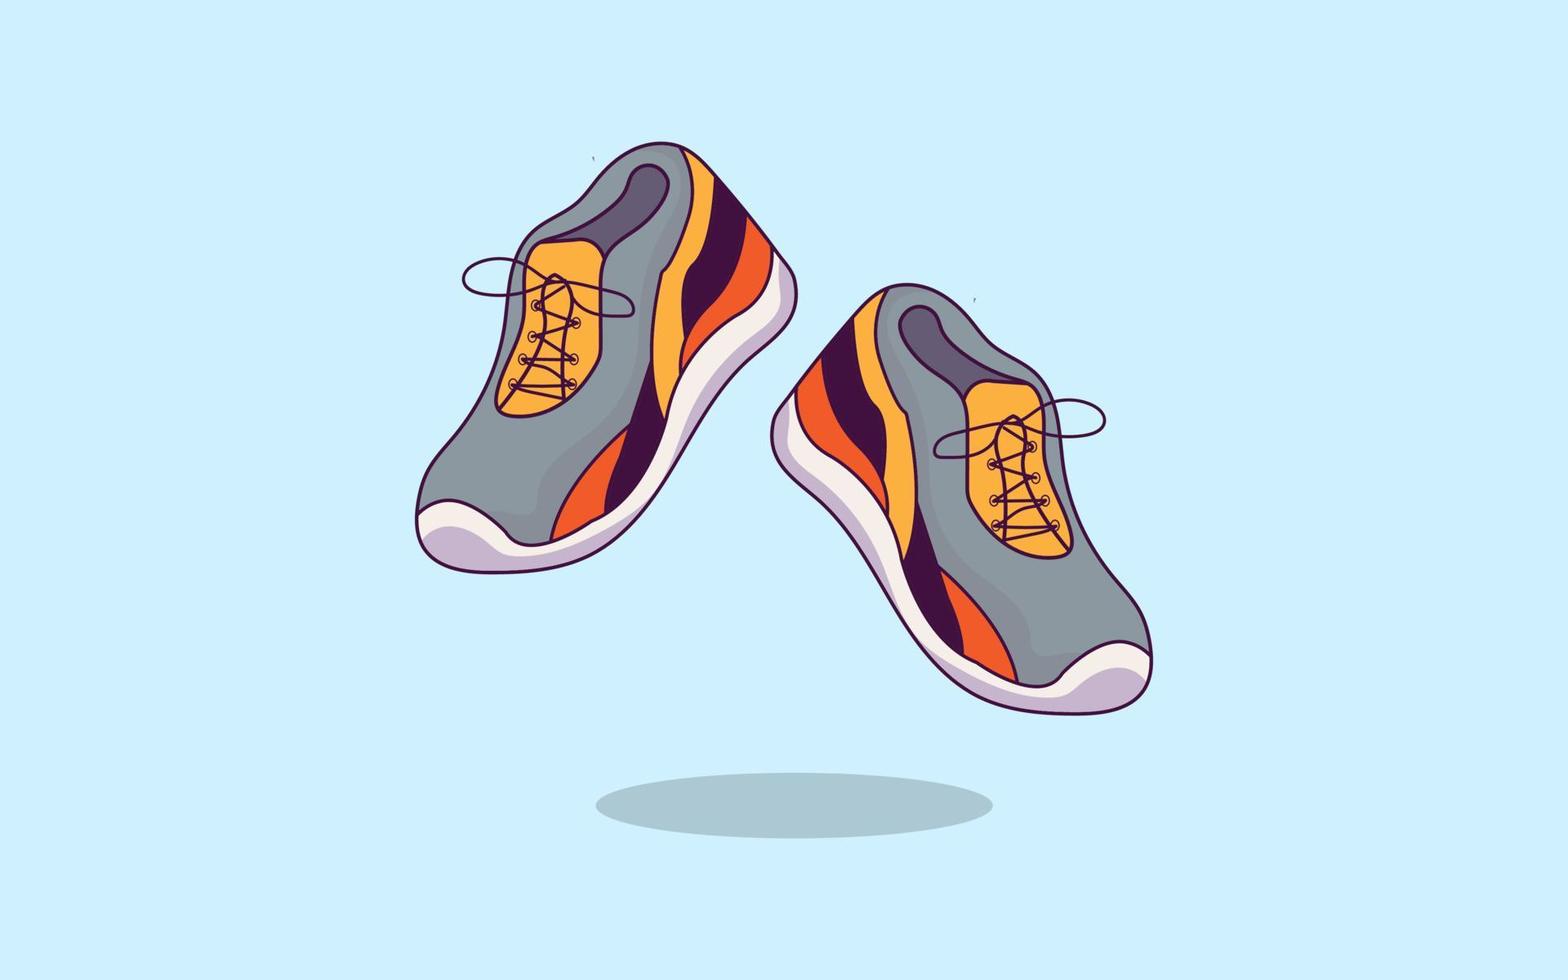 Running shoes cartoon illustration vector